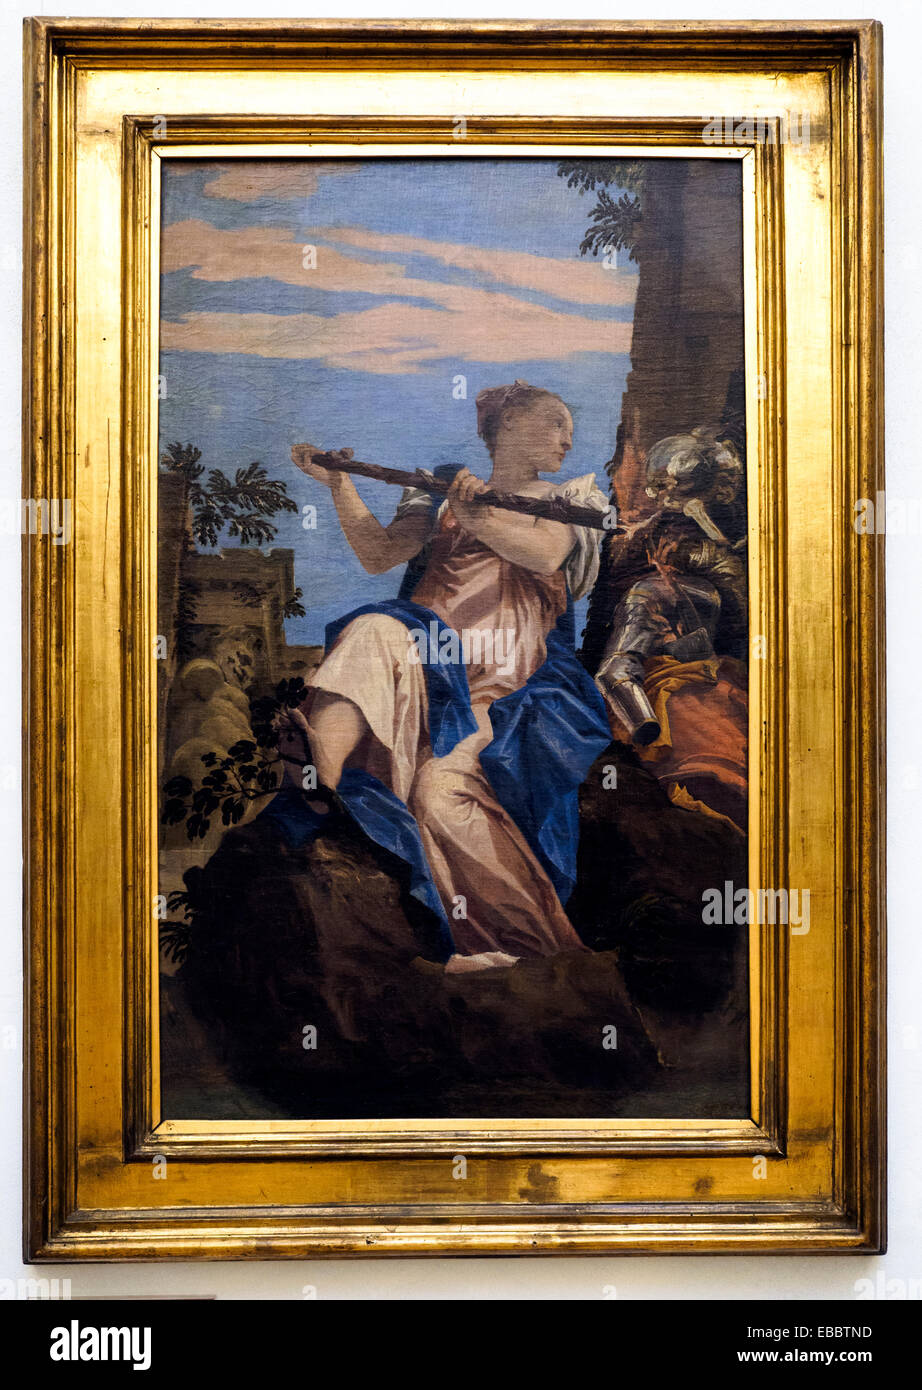 Veronese (Paolo Caliari, Verona 1528 - Venezia 1588) Allegoria della Pace (Allegory of Peace) Oil on Canvas Musei Capitolini - Rome, Italy Stock Photo